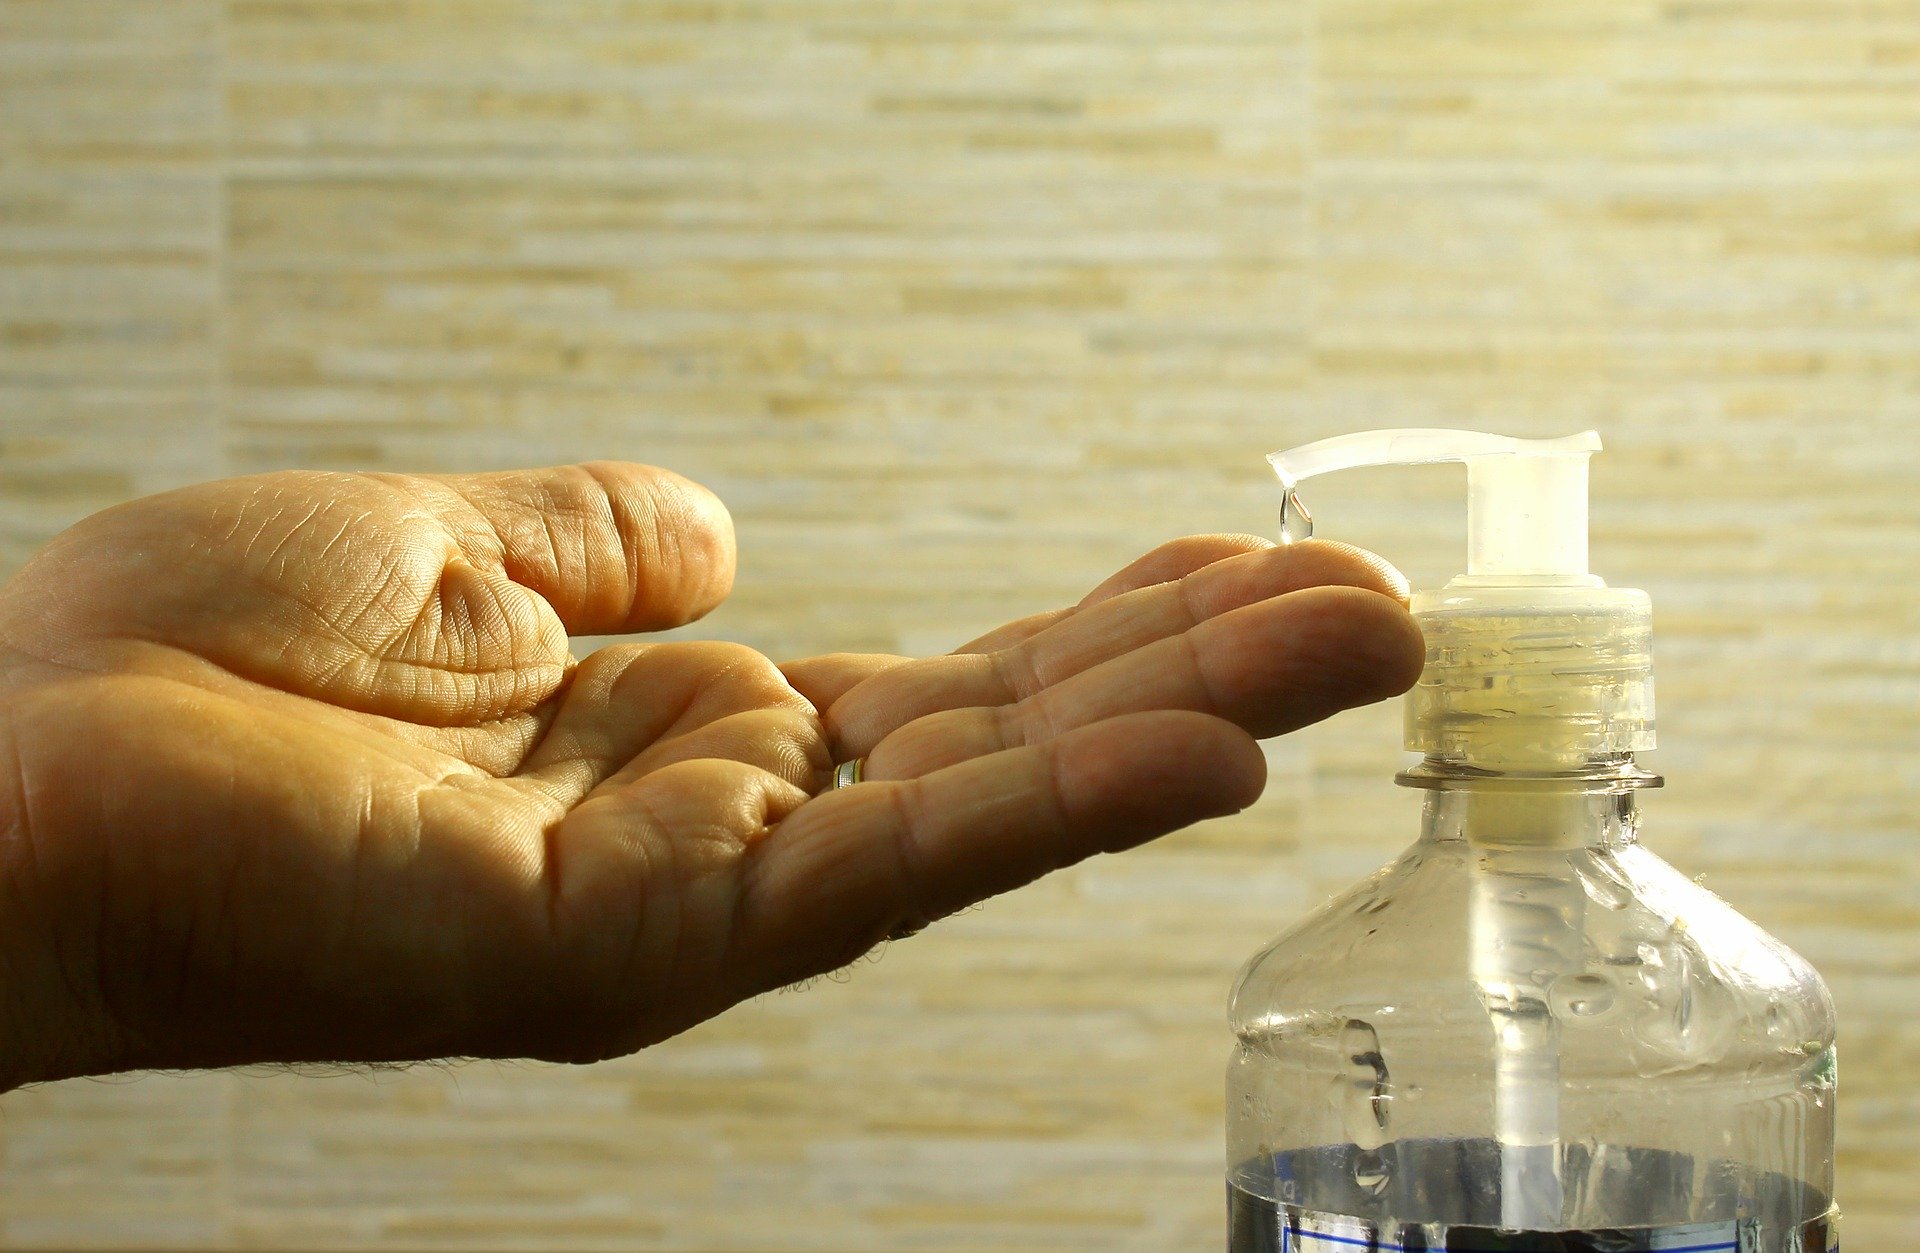     Coronavirus : les pharmaciens pourront fabriquer du gel hydroalcoolique

